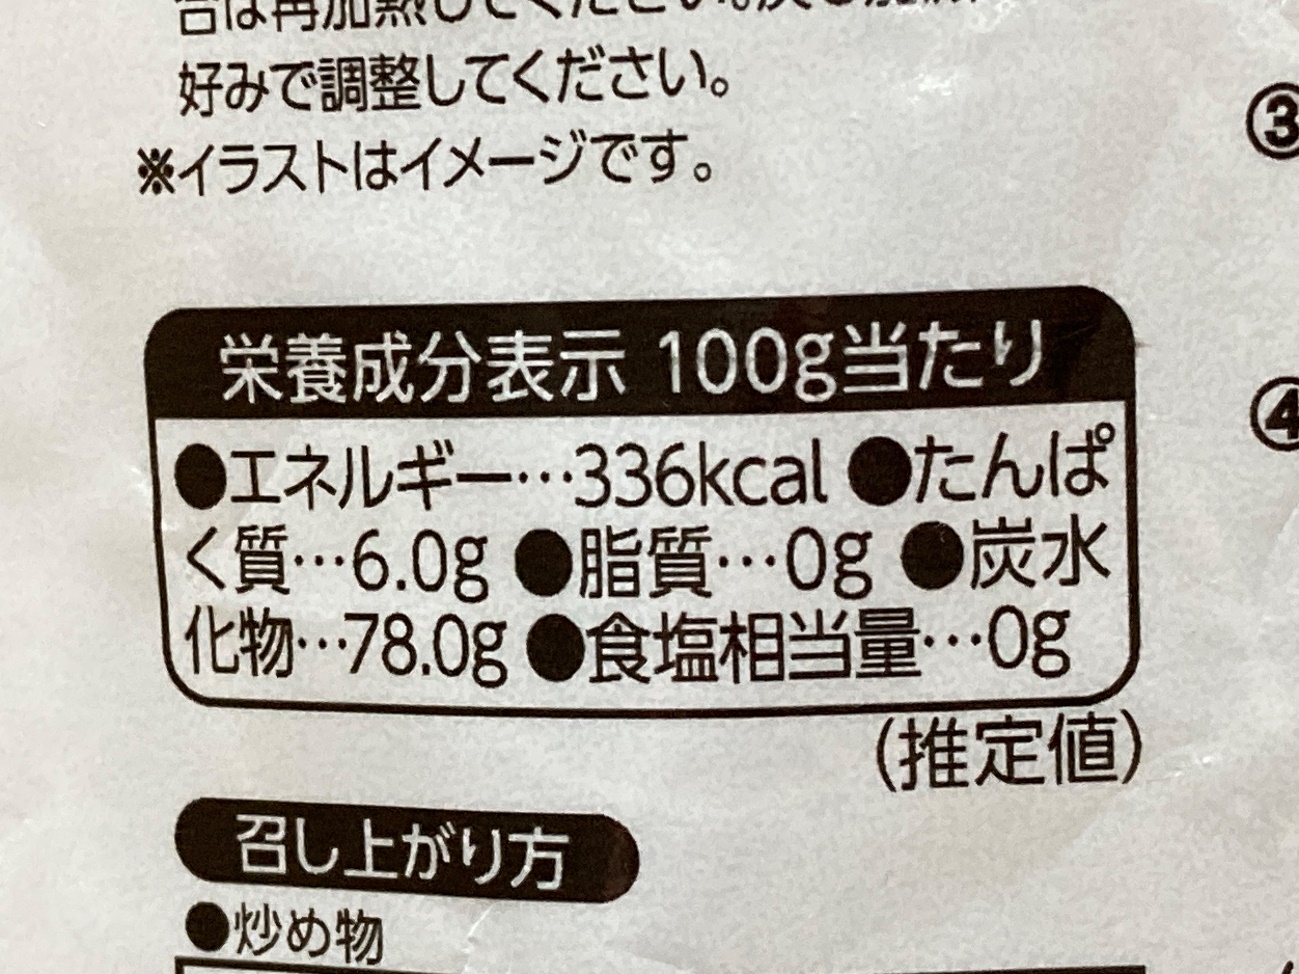 業務スーパーのアジアンビーフンのパッケージに記載されている栄養成分表